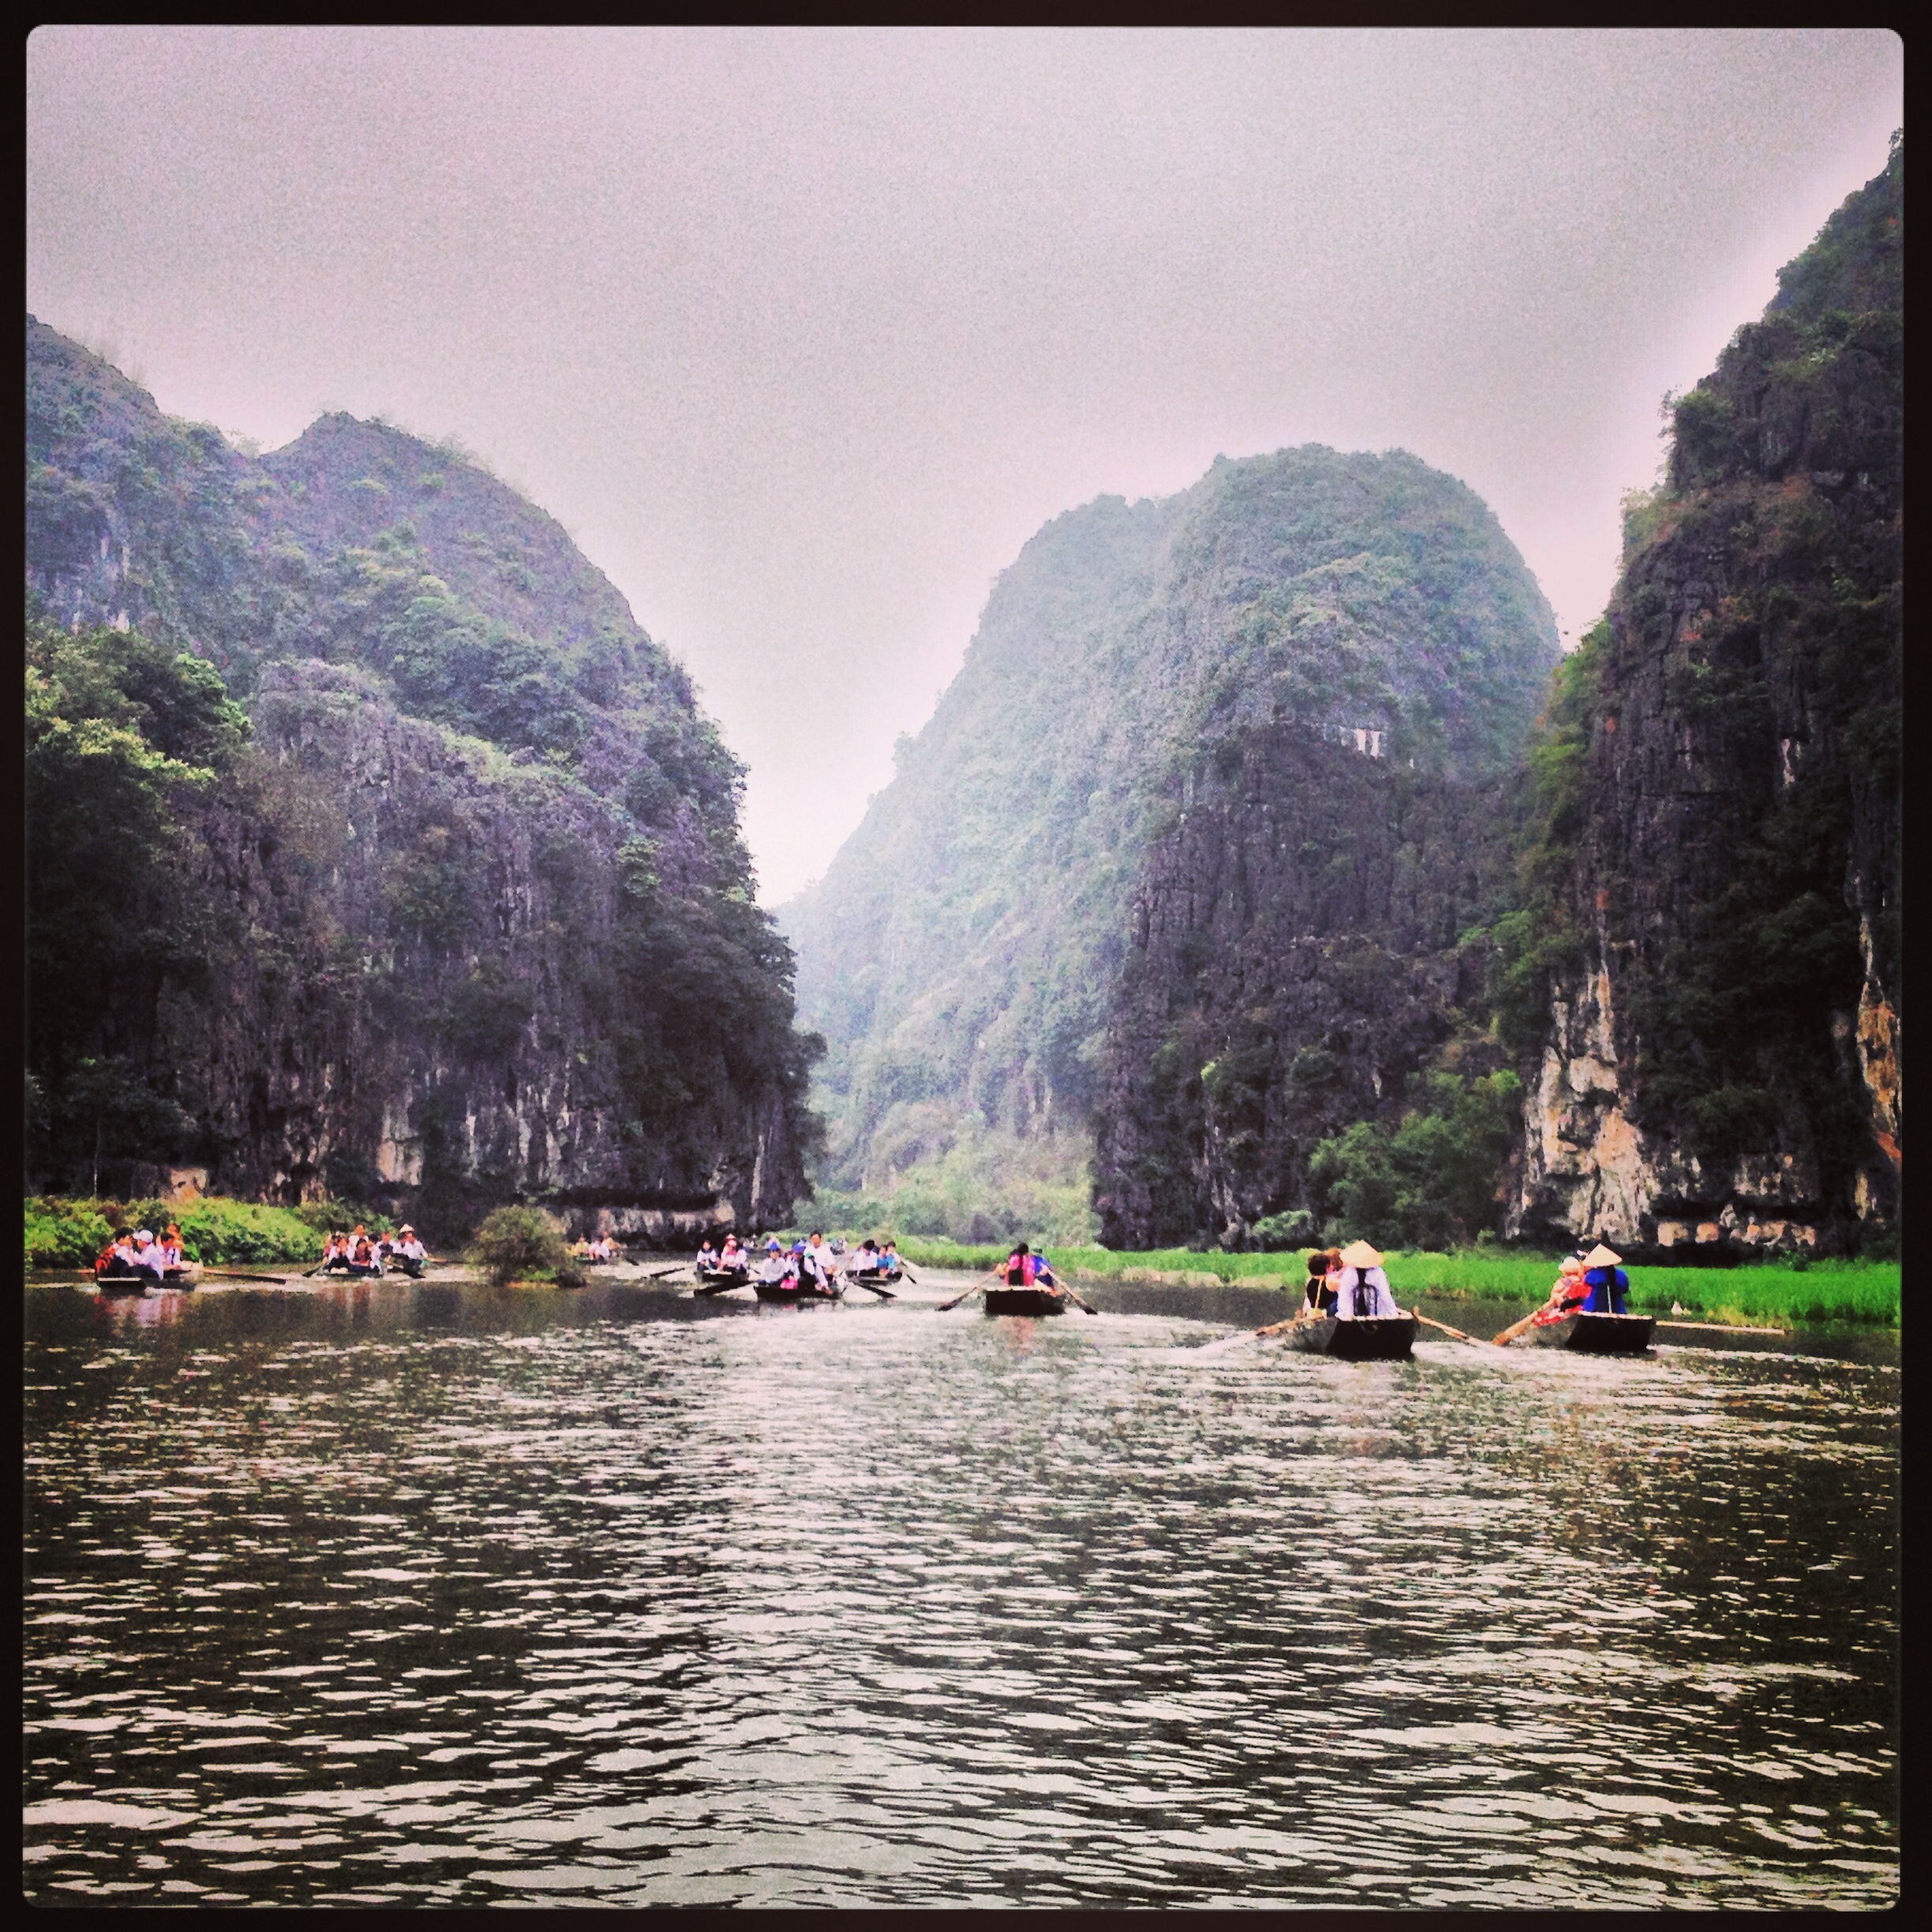 Annick en voyage de familiarisation au Vietnam - Grottes Tam Coc